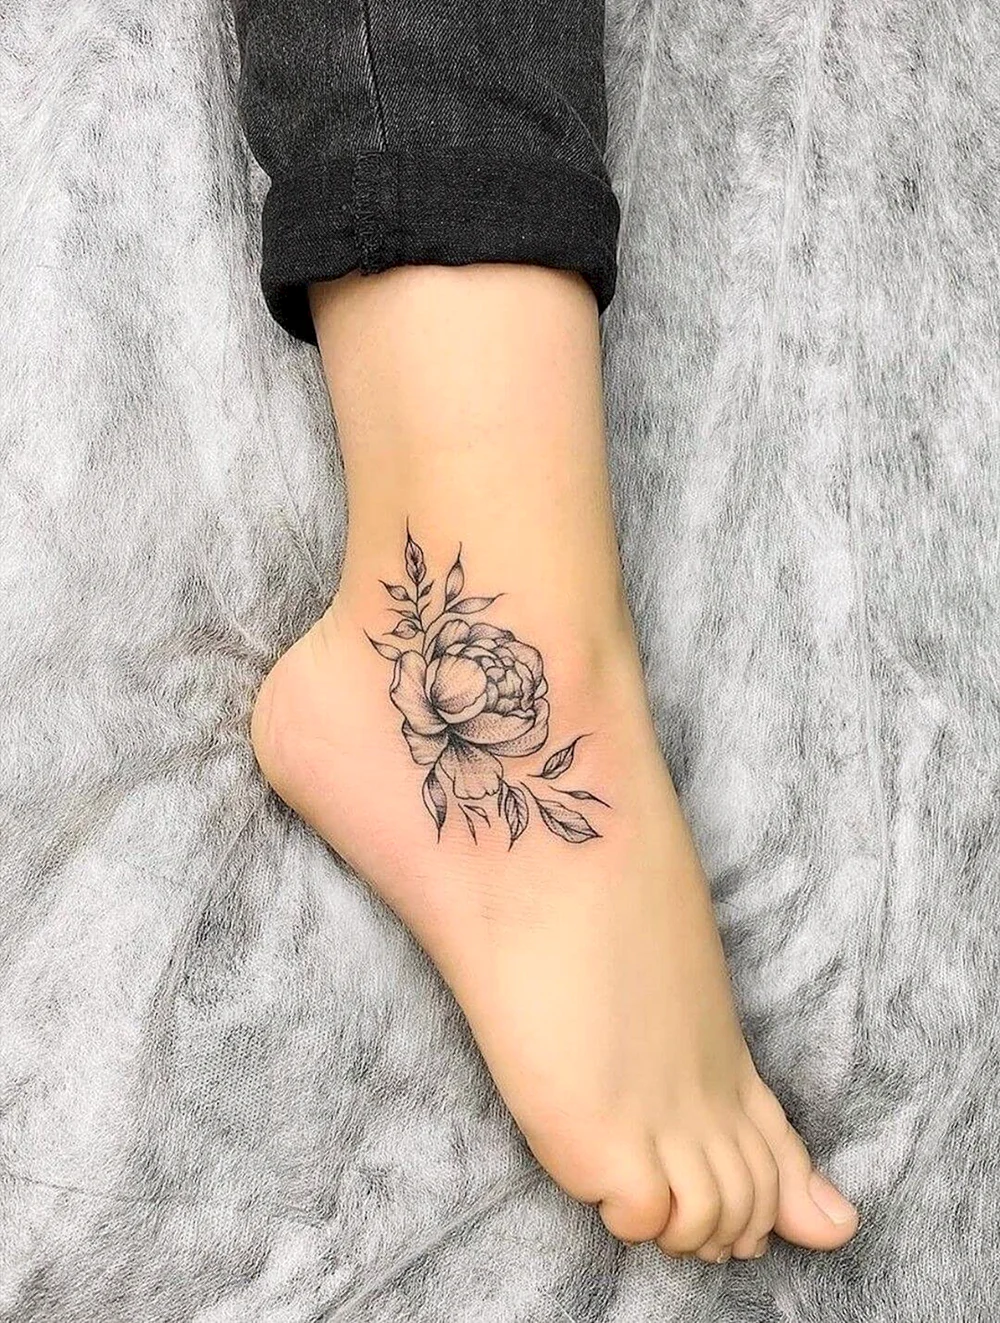 Female Ankle Tattoo